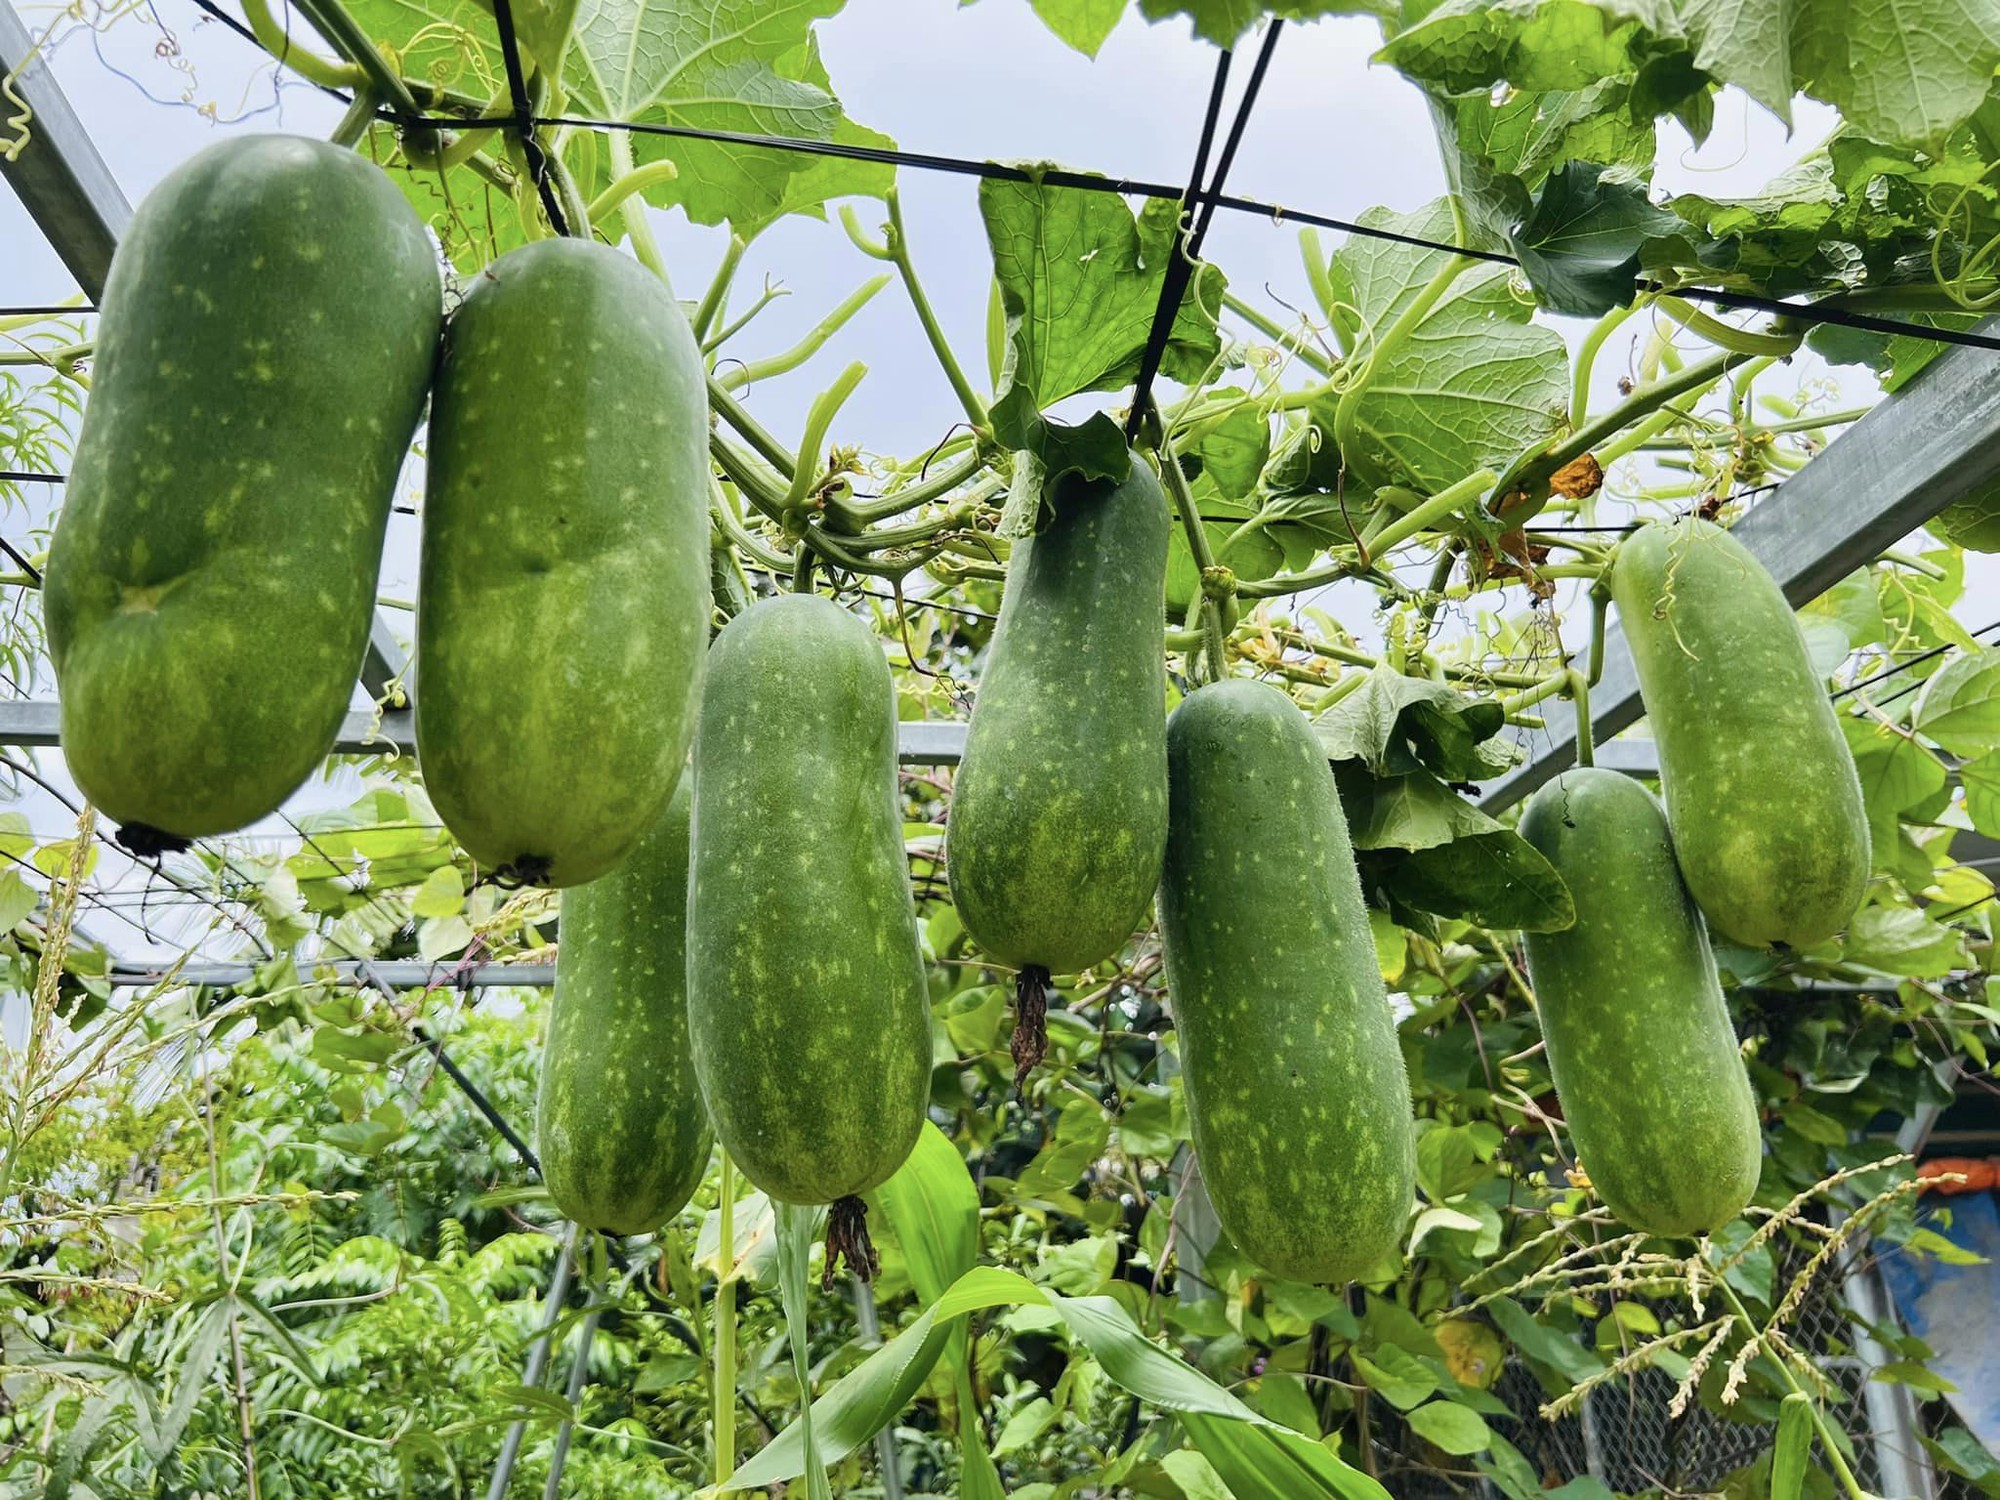 Khu vườn rộng 300m2 sum suê rau trái, mùa nào thức nấy, tươi tốt um tùm của mẹ đảm 4 con ở Quảng Ninh- Ảnh 20.